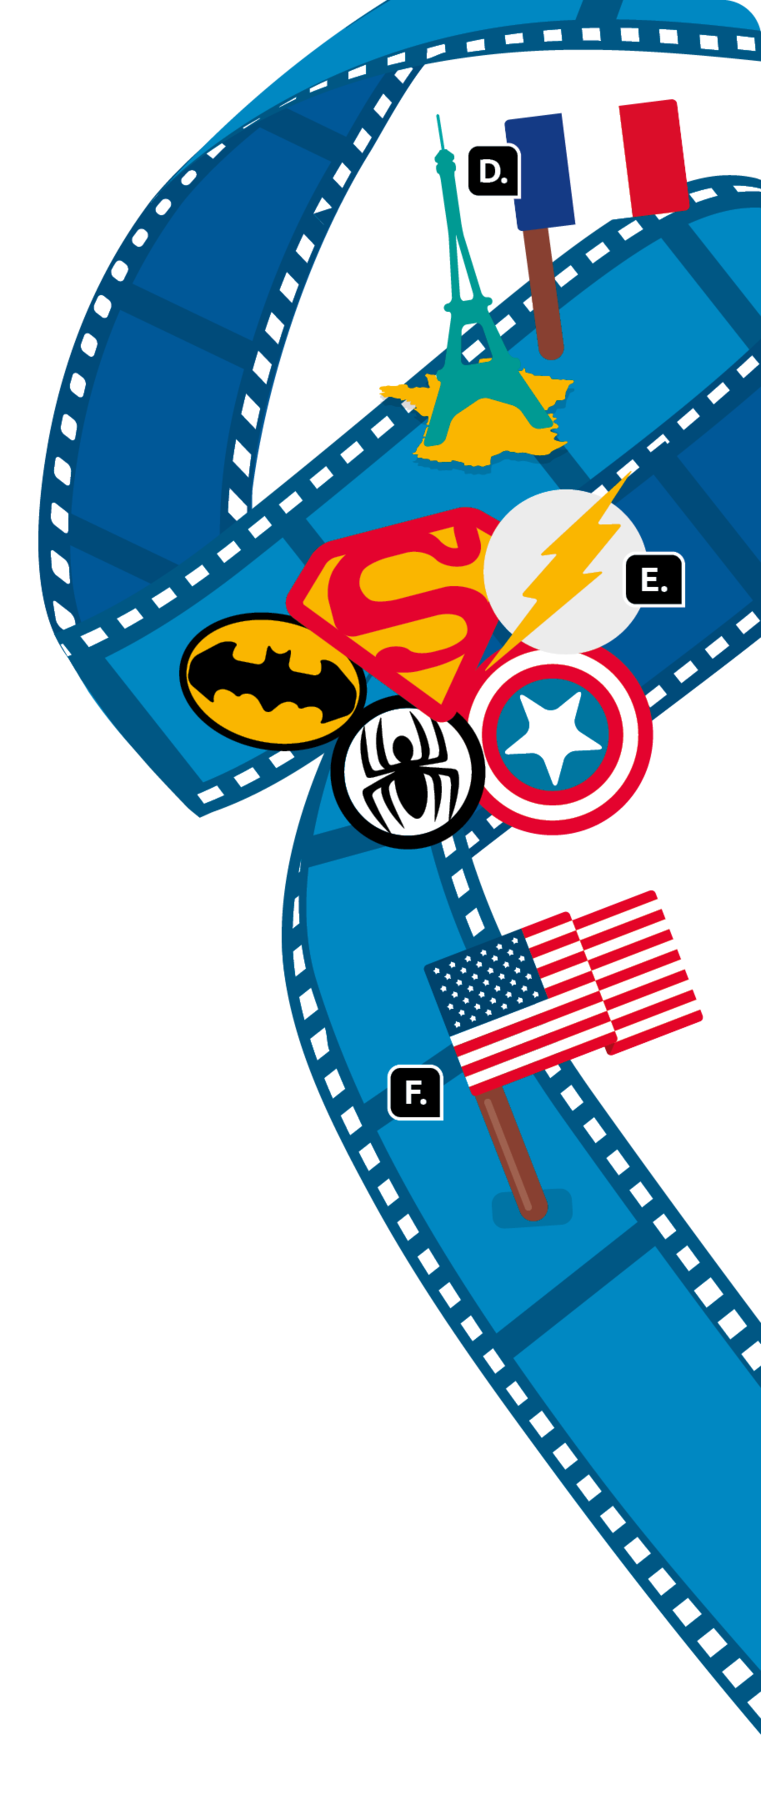 Esquema. Continuação do rolo de filme com a bandeira da França, ao lado da torre Eiffel, indicado com a letra D; escudos de super-heróis, como: Batman, Super-homem, Homem-Aranha, Capitão América e Flash, letra E; a bandeira dos Estados Unidos, letra F.